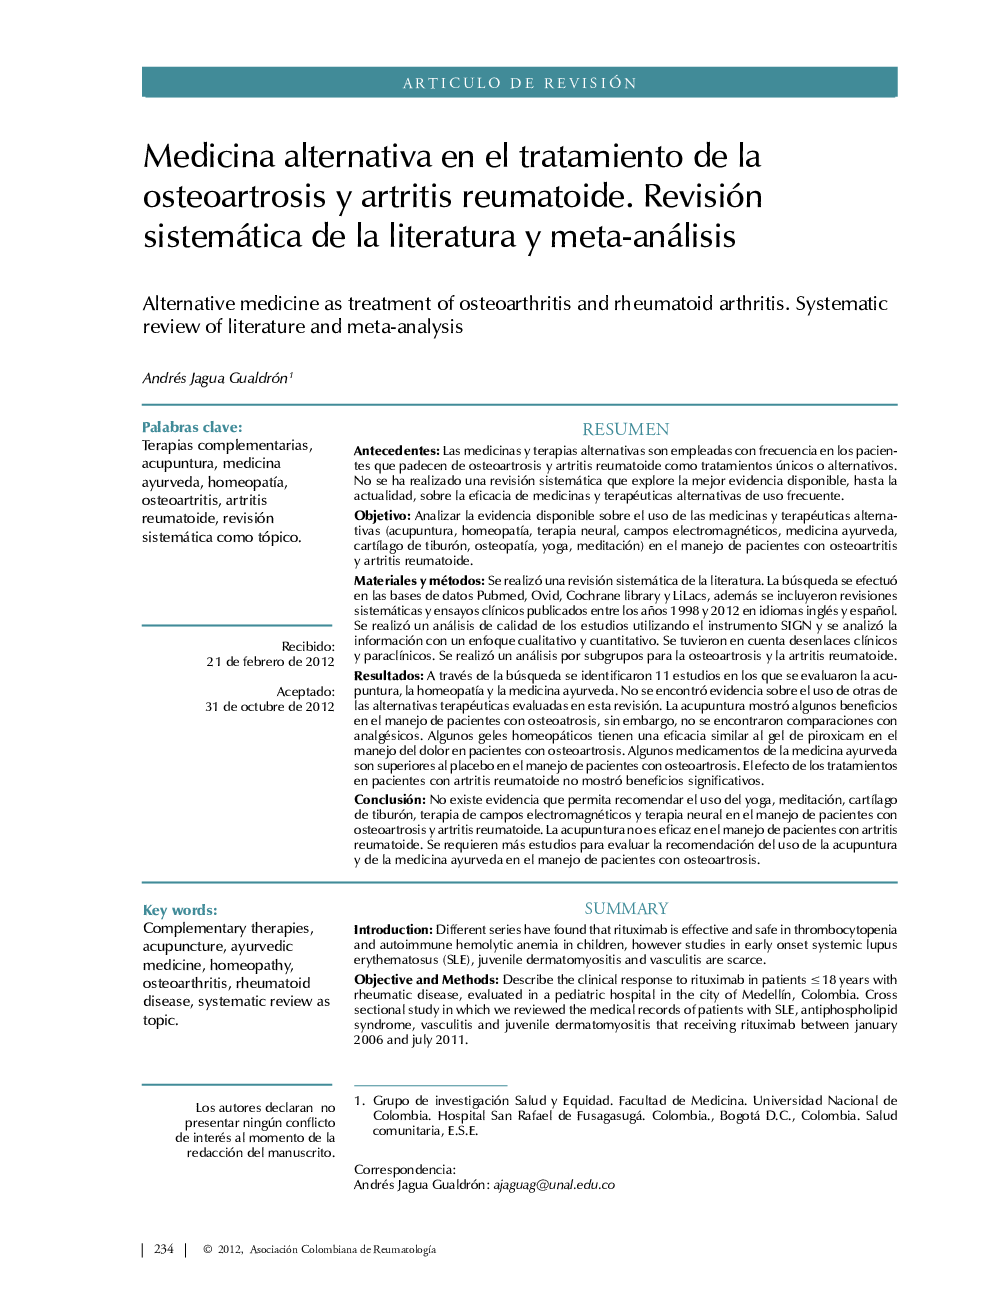 Medicina alternativa en el tratamiento de la osteoartrosis y artritis reumatoide. Revisión sistemática de la literatura y meta-análisis